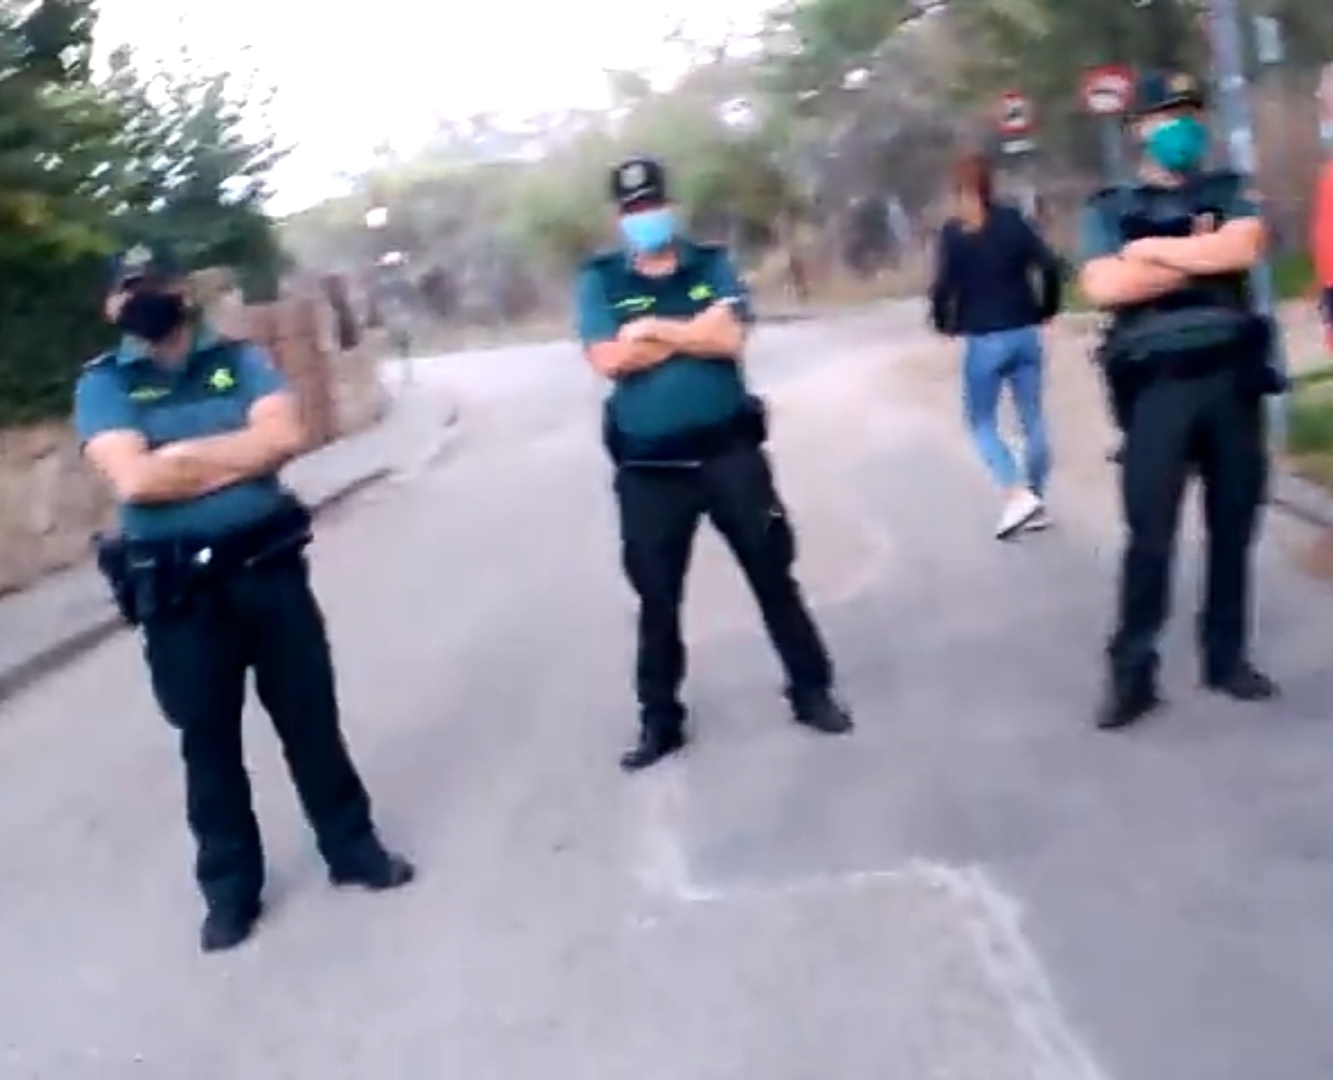 Galapagar: Pablo Iglesias decide quién puede pasar y estar en su calle, disfrazado de operativos policiales, ante la pasividad del Ayuntamiento